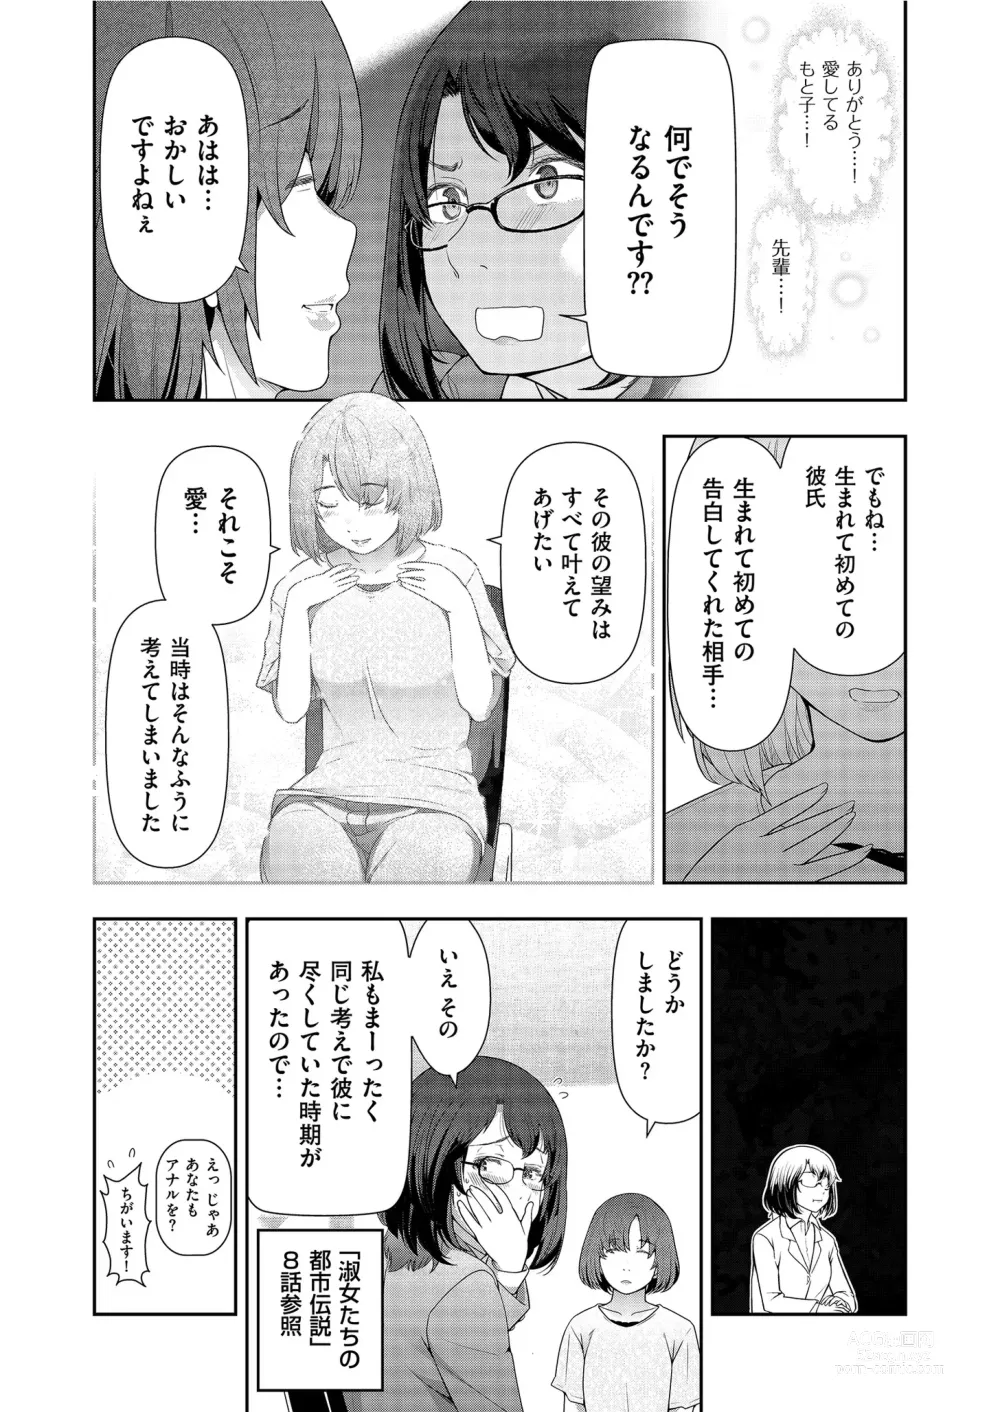 Page 152 of manga Yonimo Kanbi na Toshi Densetsu BF